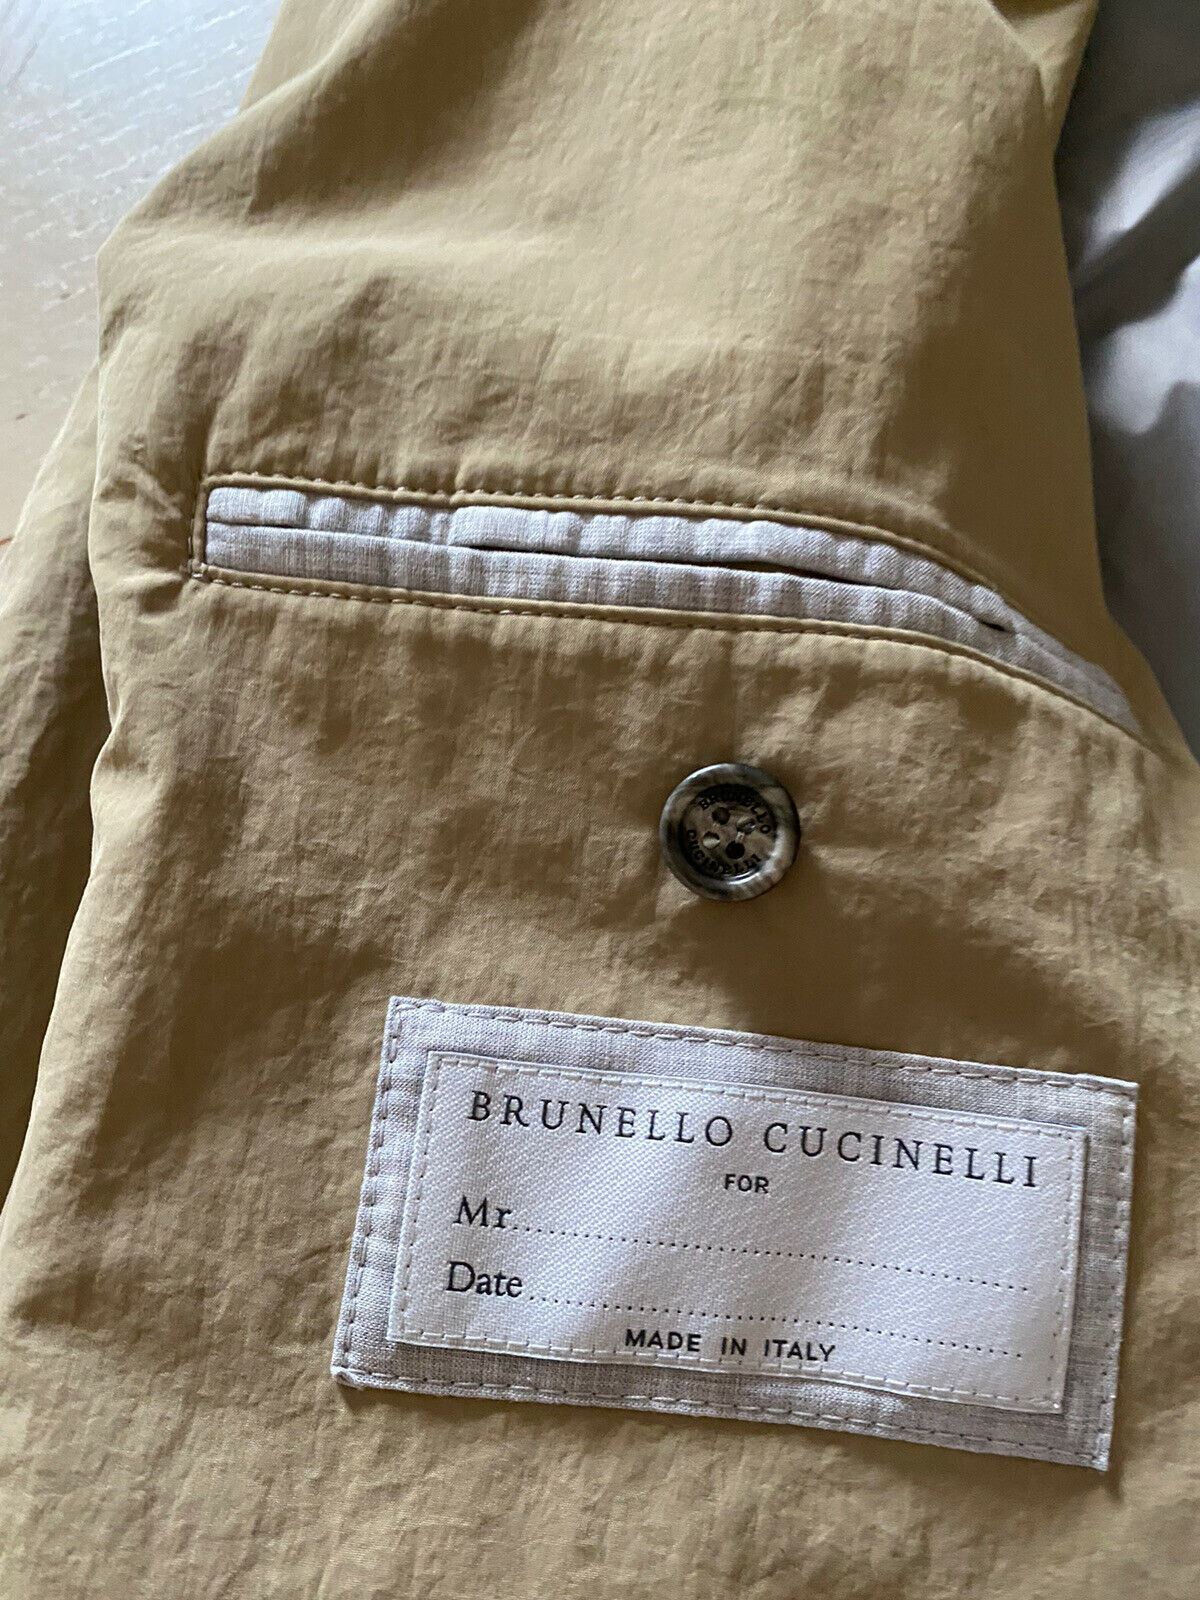 NWT $1995 Мужское спортивное пальто Brunello Cucinelli Технический пиджак Бежевый 40R США Италия